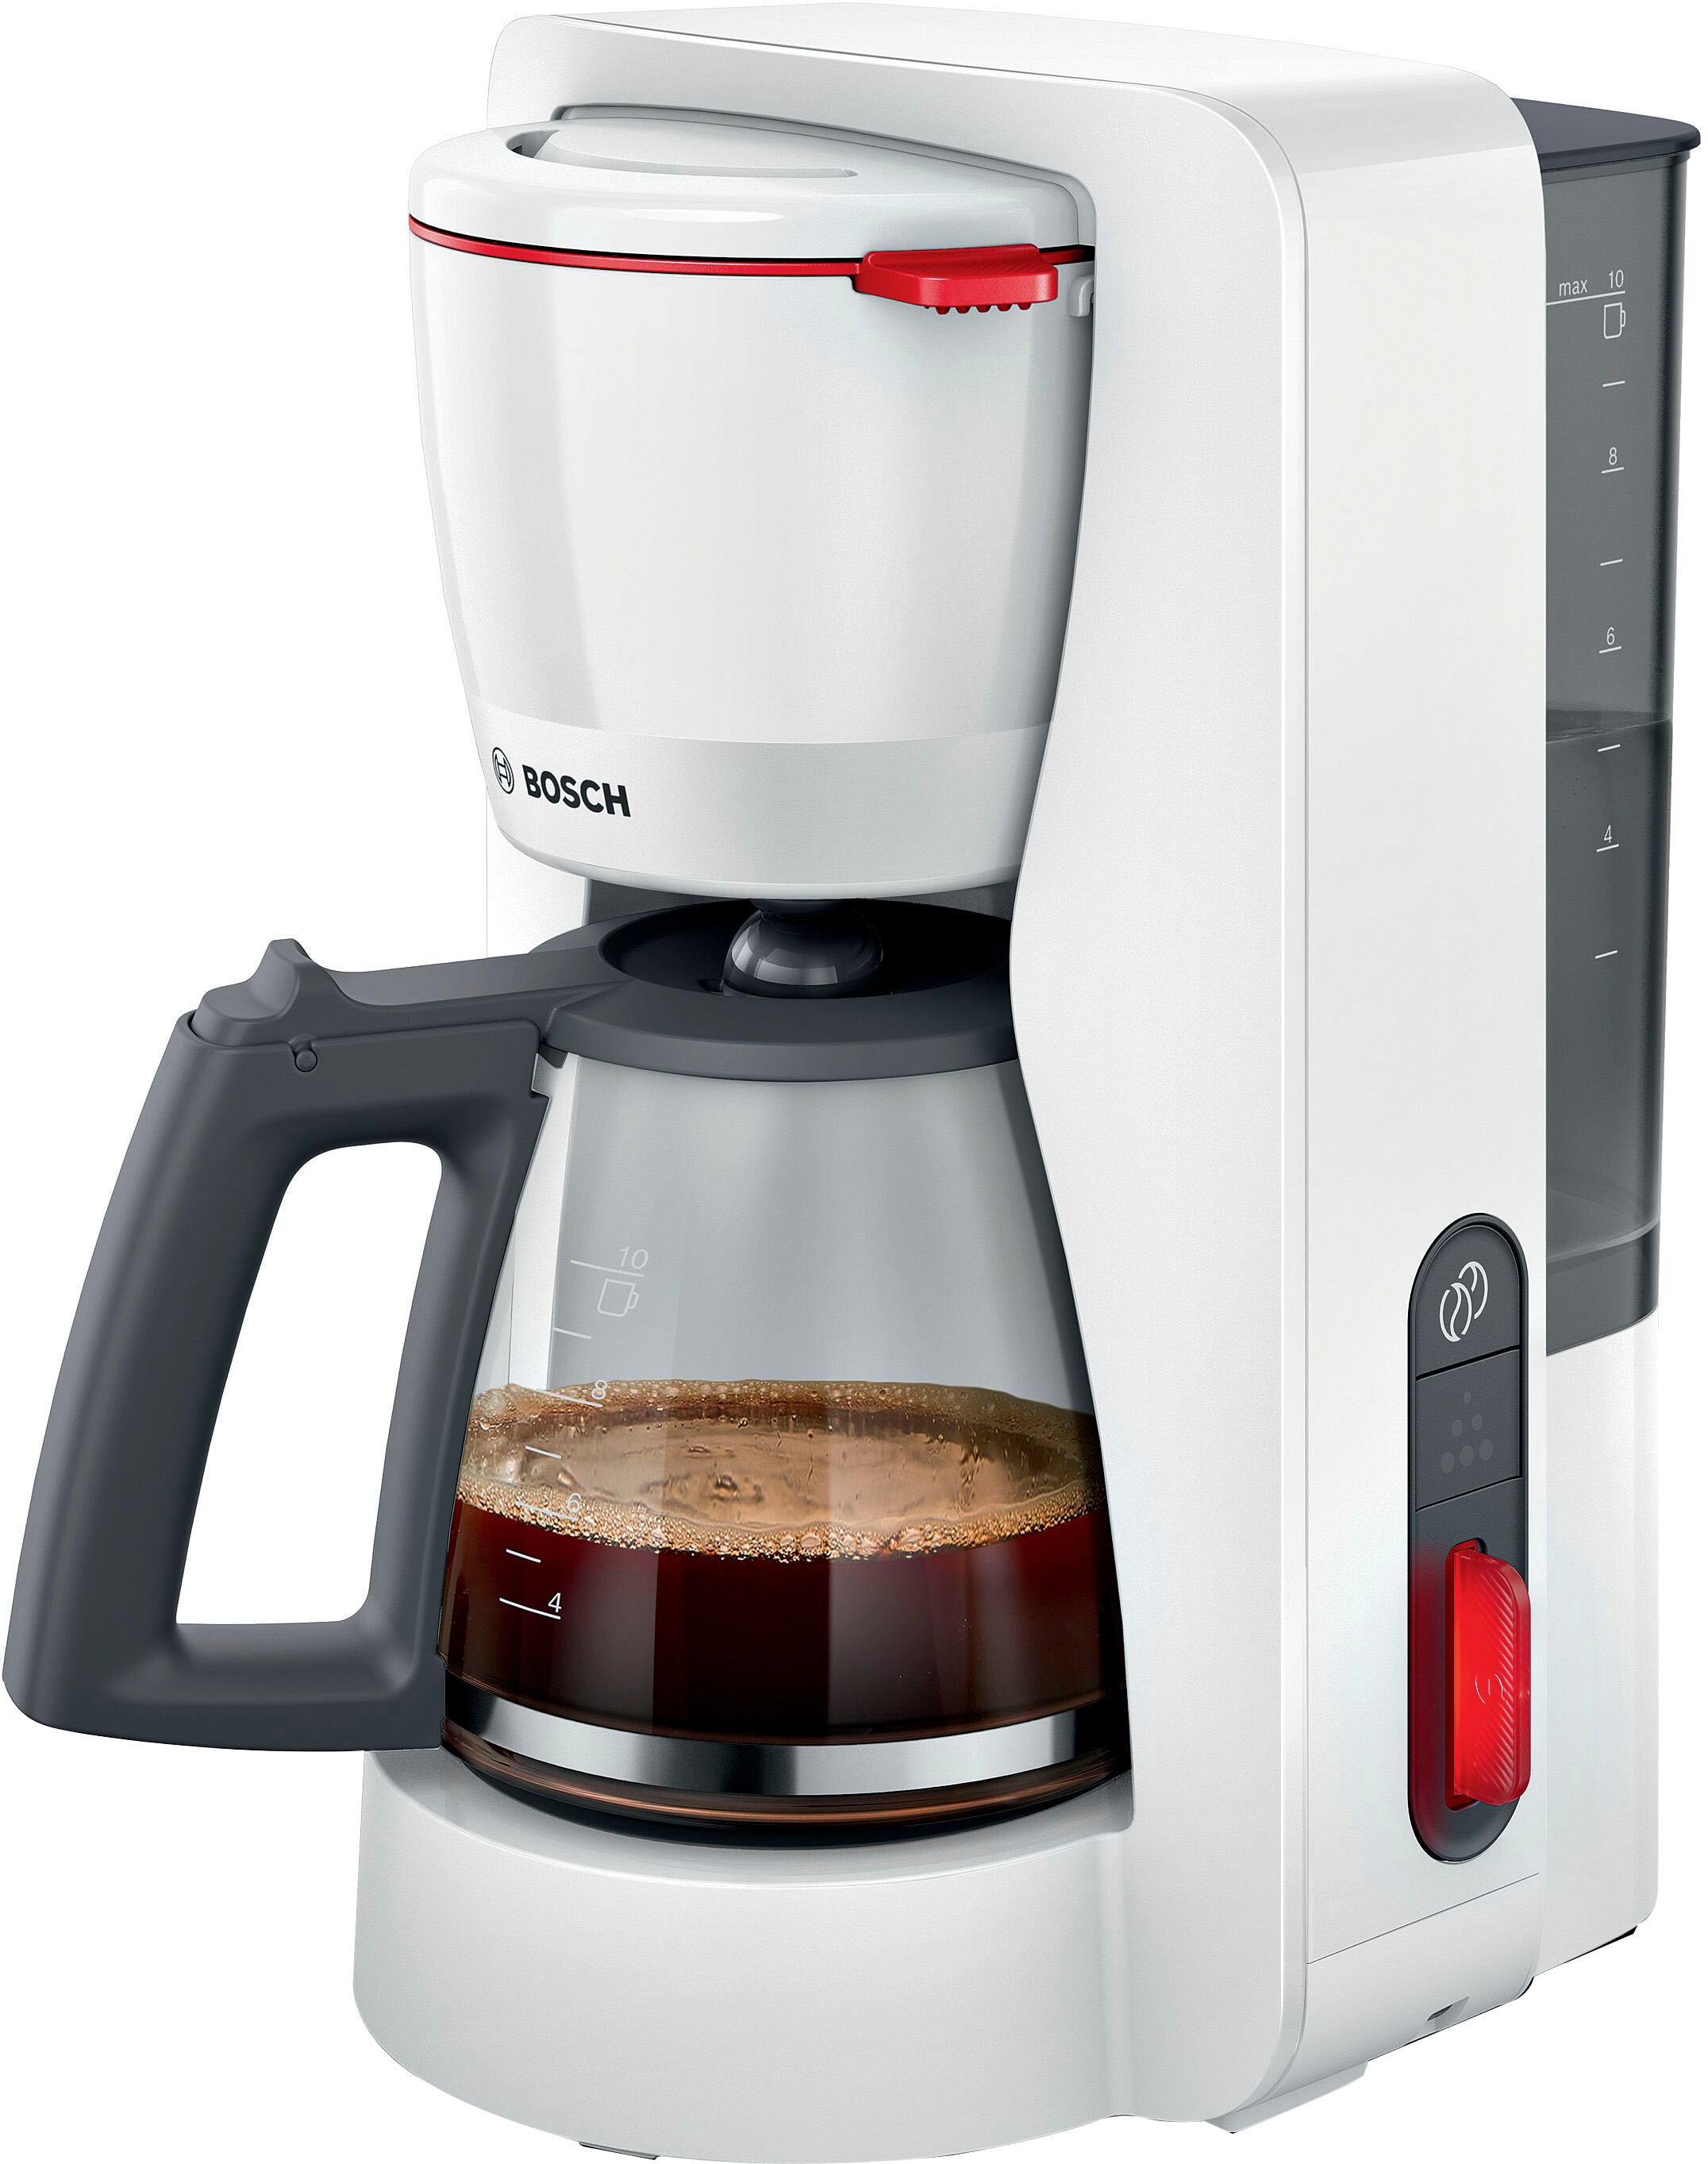 BOSCH Filterkaffeemaschine »MyMoment TKA3M131«, 1,25 l Kaffeekanne,  Papierfilter, 1x4, 60min Warmhaltefunktion, Aroma intense,  Entkalkungsprogramm, 1200 W kaufen bei OTTO